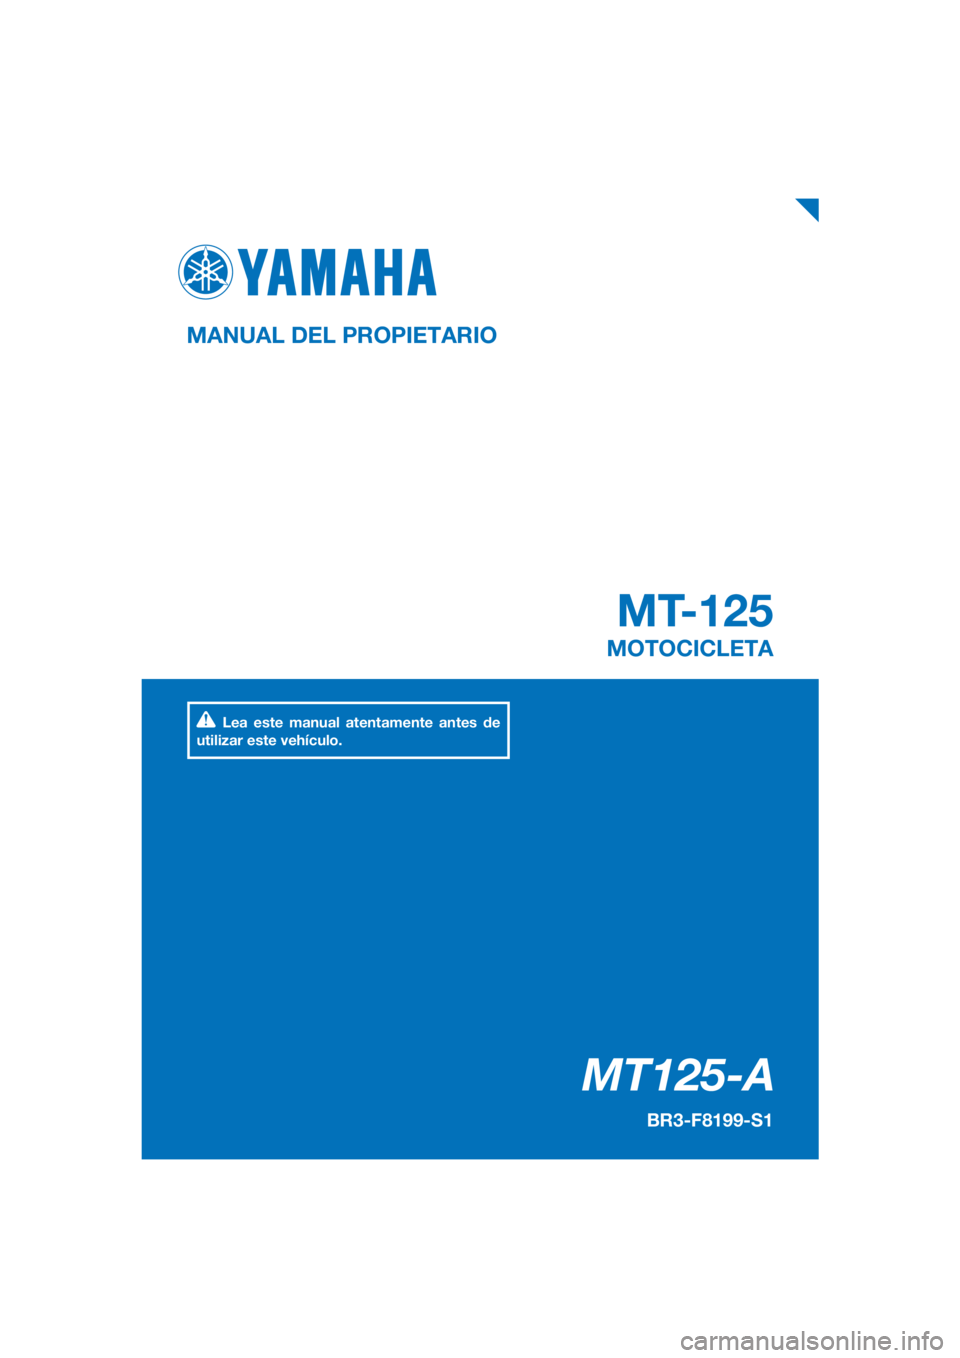 YAMAHA MT-125 2017  Manuale de Empleo (in Spanish) PANTONE285C
MT125-A
MT-125
MANUAL DEL PROPIETARIO
BR3-F8199-S1
MOTOCICLETA
Lea este manual atentamente antes de 
utilizar este vehículo.
[Spanish  (S)] 